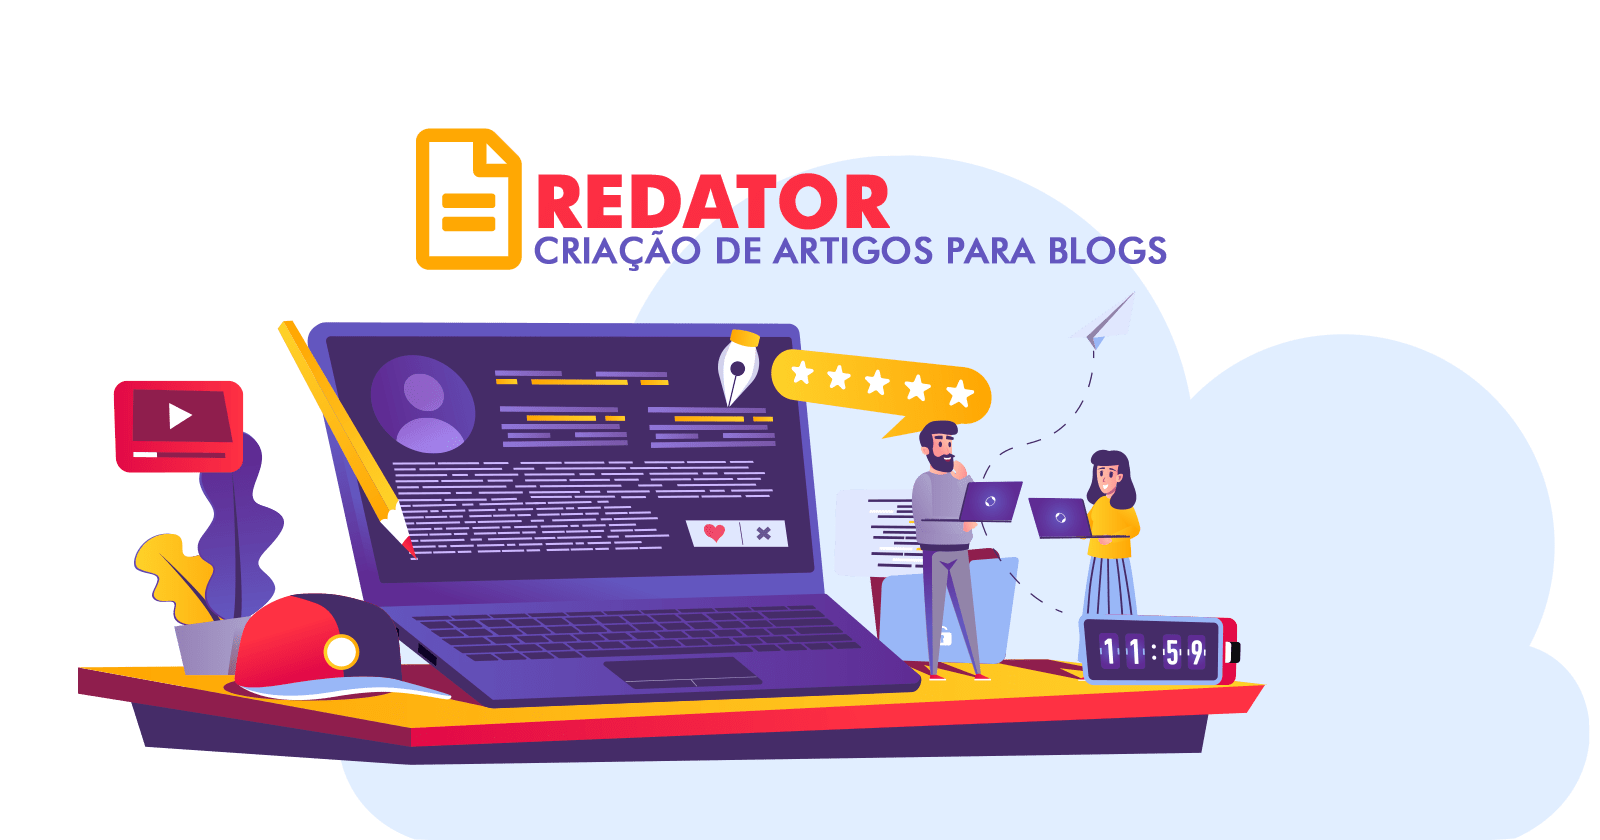 Redator - Criação de Artigos para Blog - Sorocaba - SP